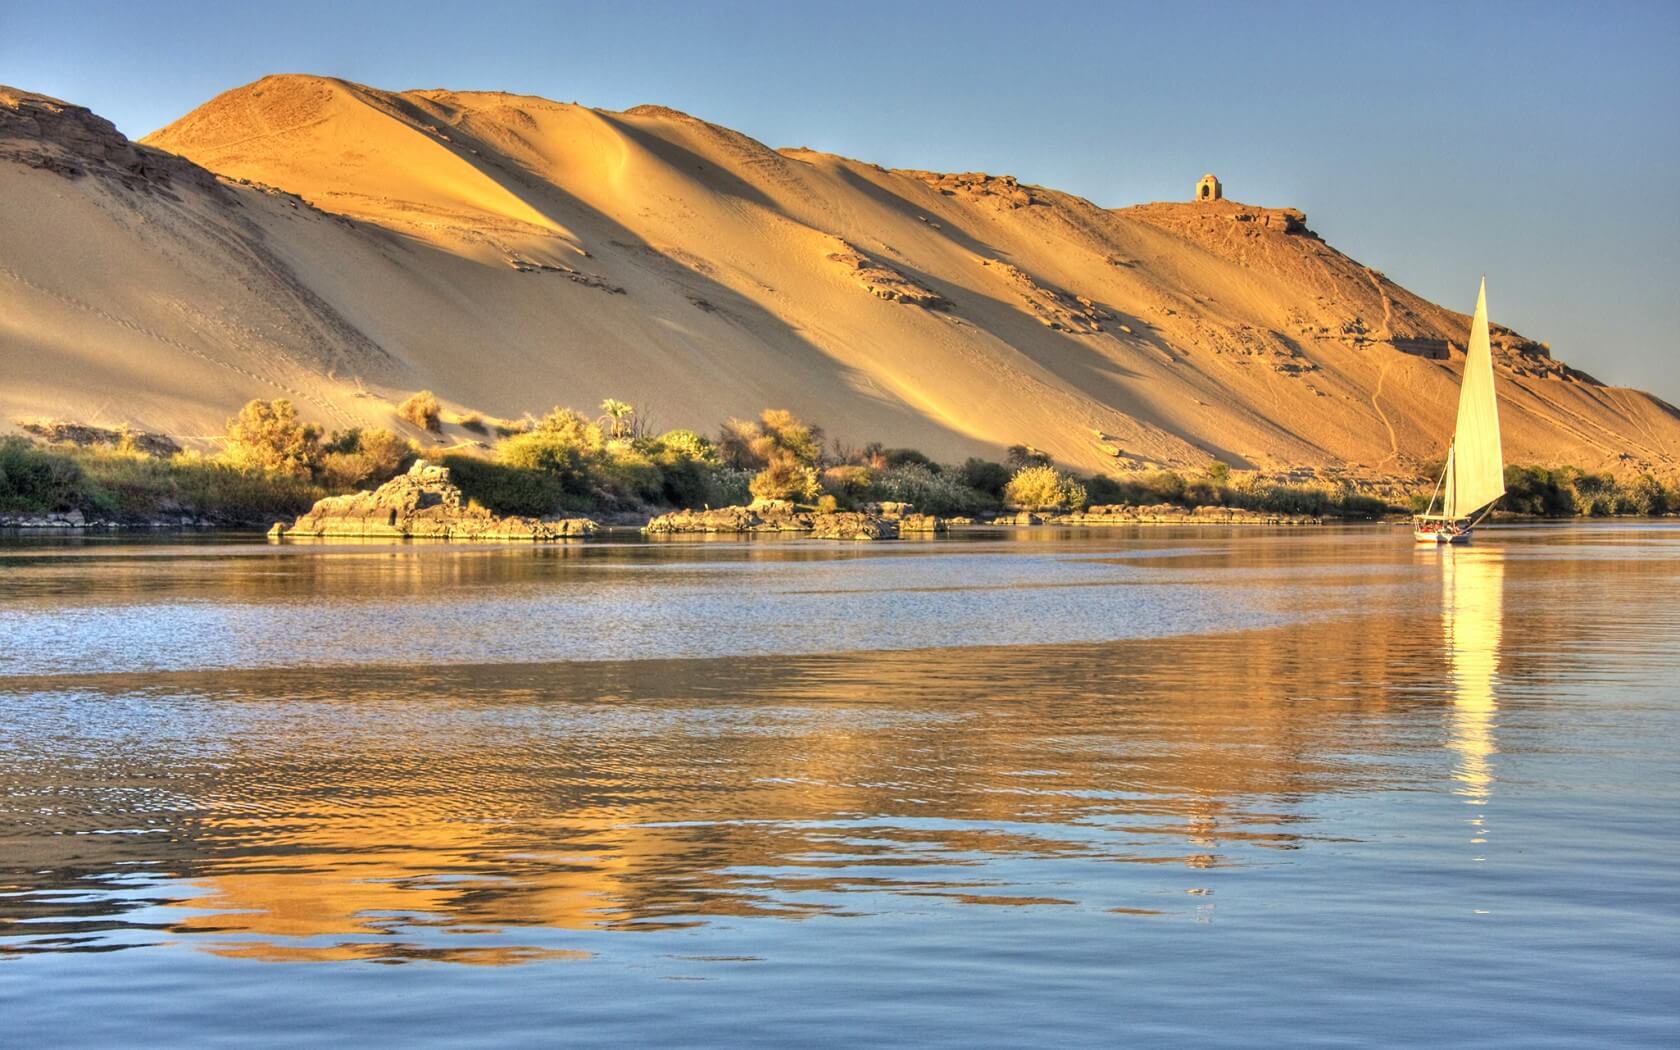 أطول يبلغ النهرين كلم نهر أي وطول ٢٧٠٠ الفرات ؟ كلم طول ٦٦٥٠ ، النيل . نهر ٧٣٠٠٠ م